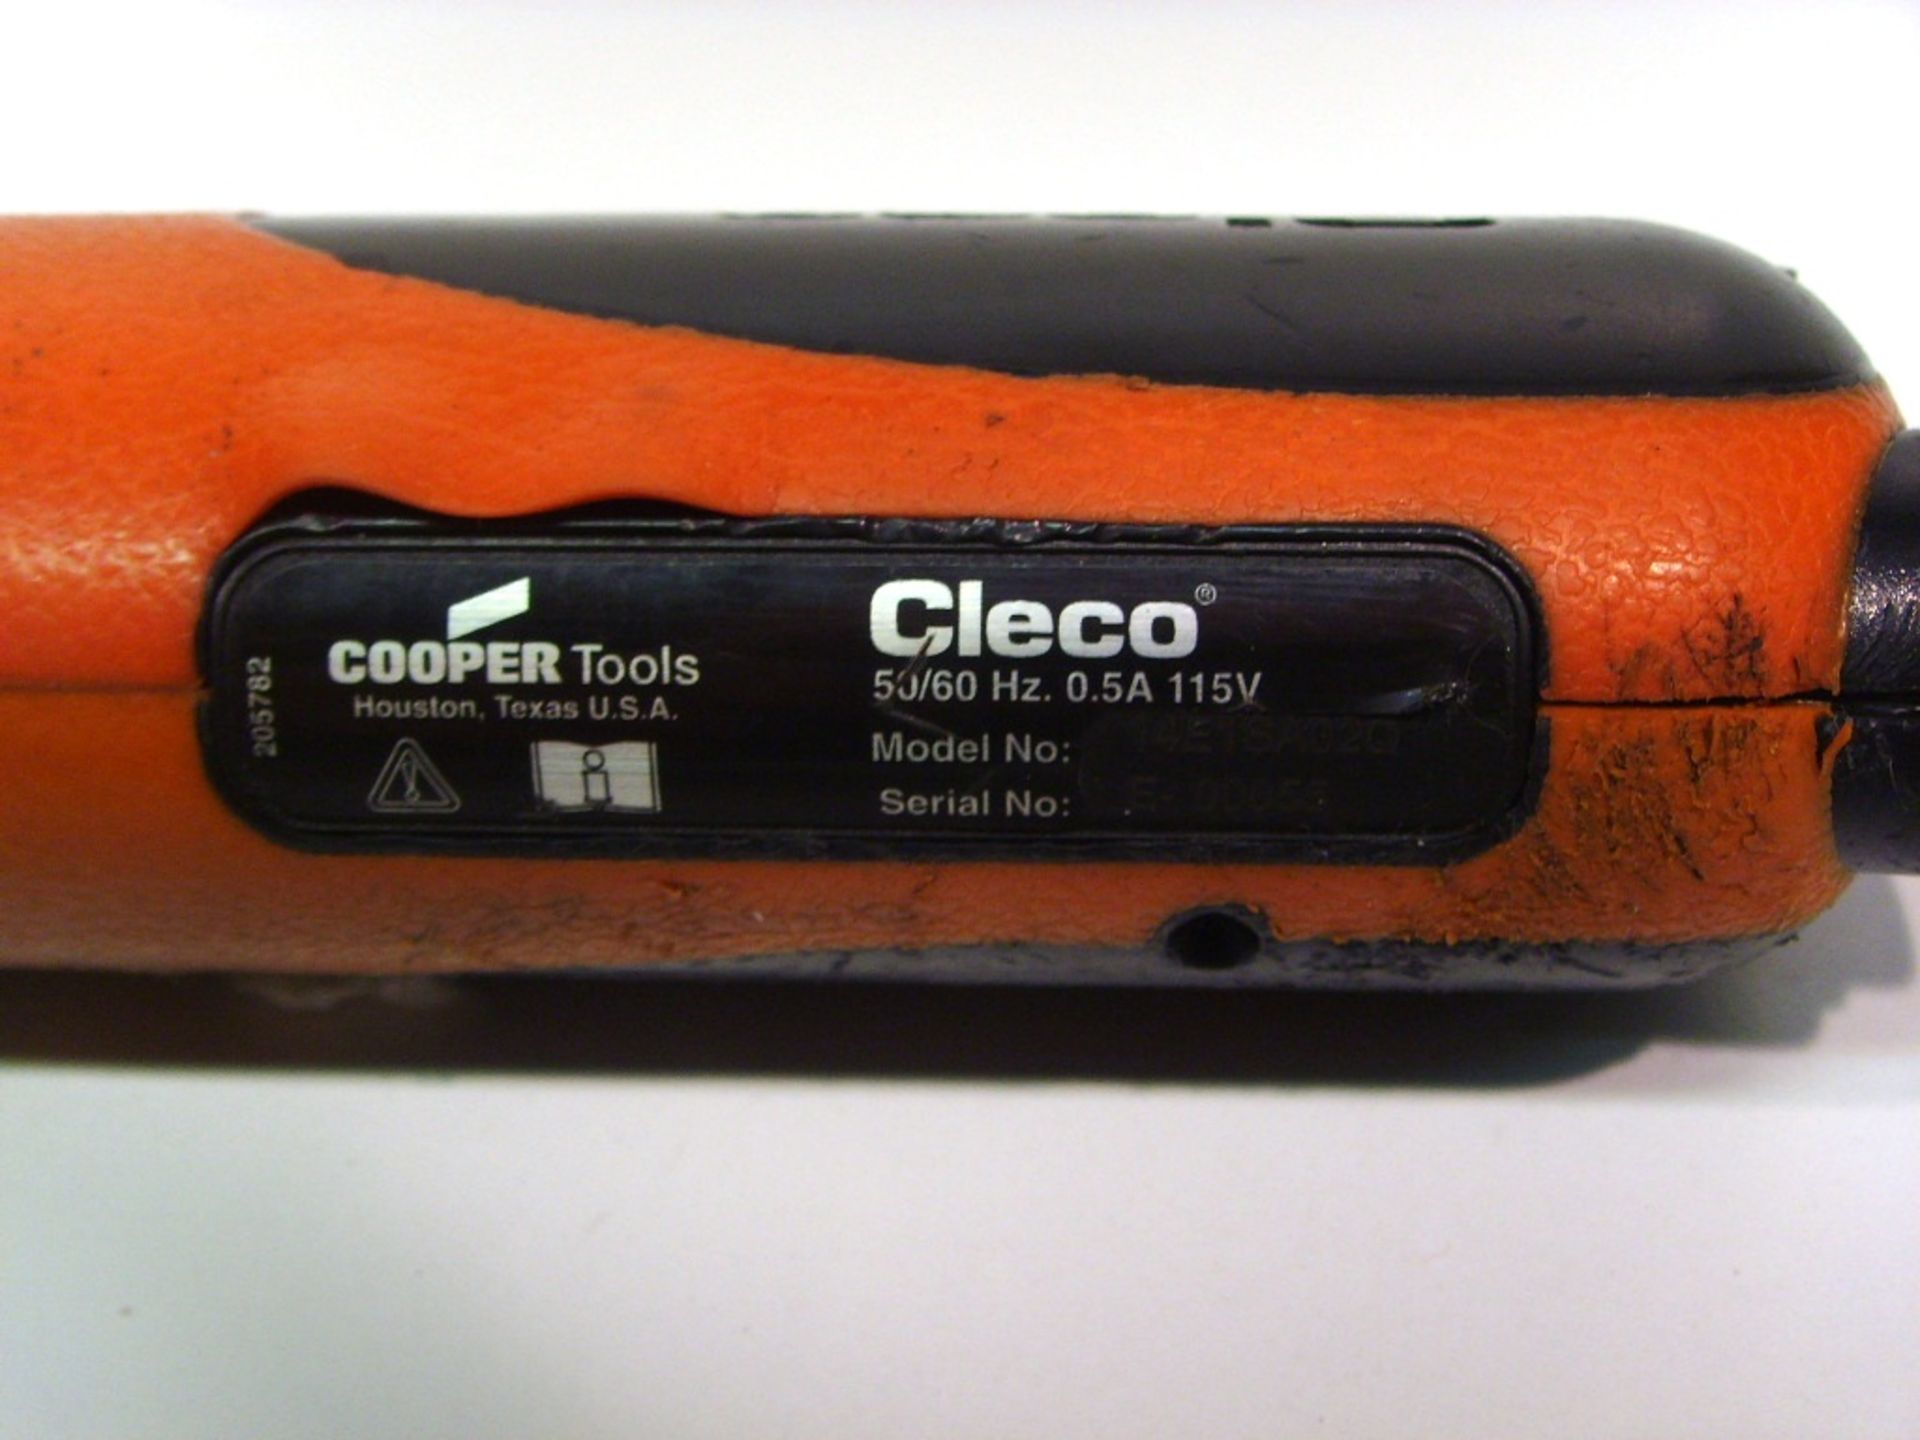 Cleco/Cooper Tools 14E1SA02Q Electric Screwdriver - Image 2 of 2